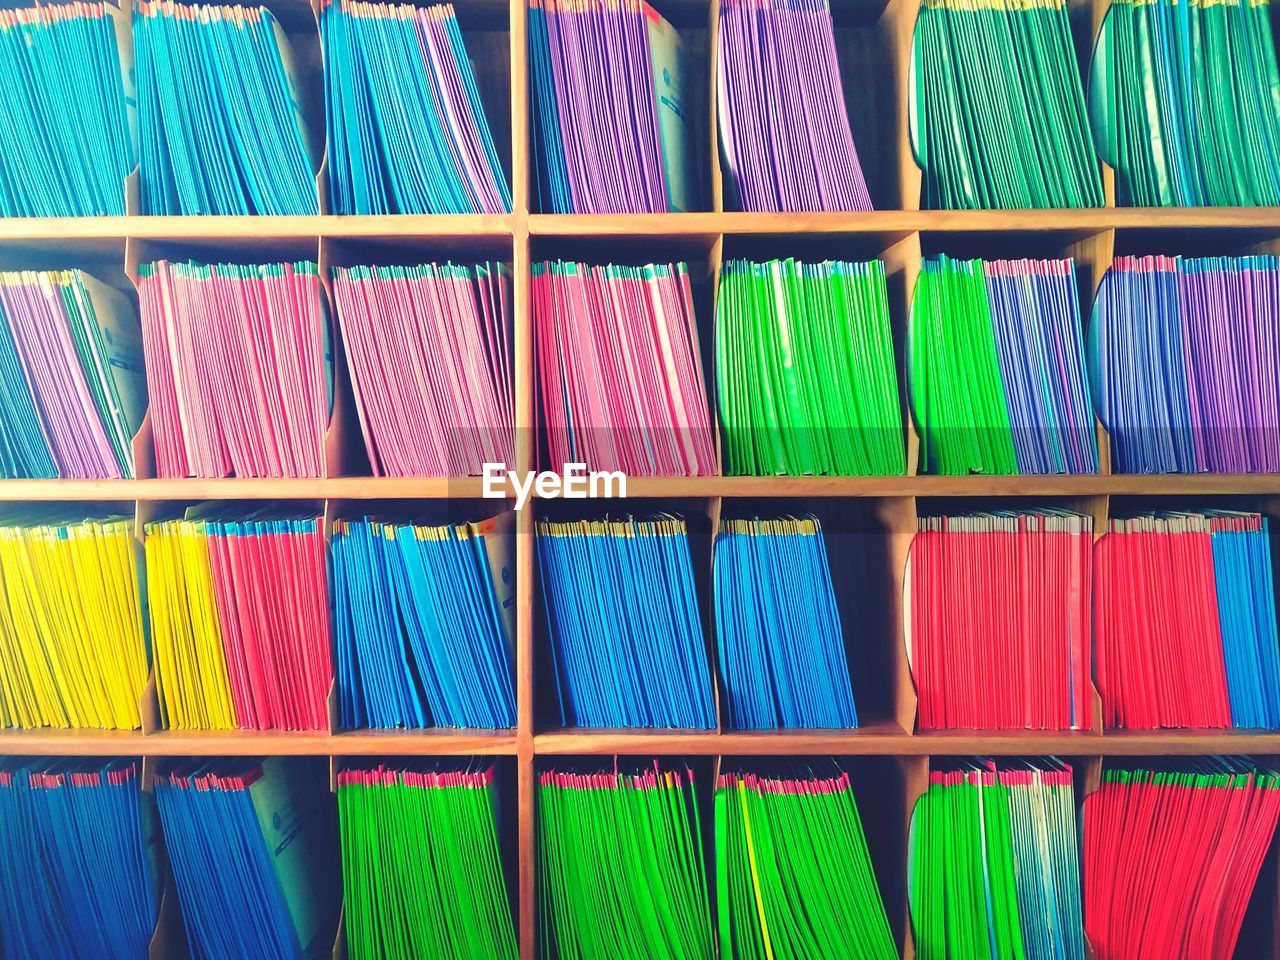 Full frame shot of multi colored files in shelves